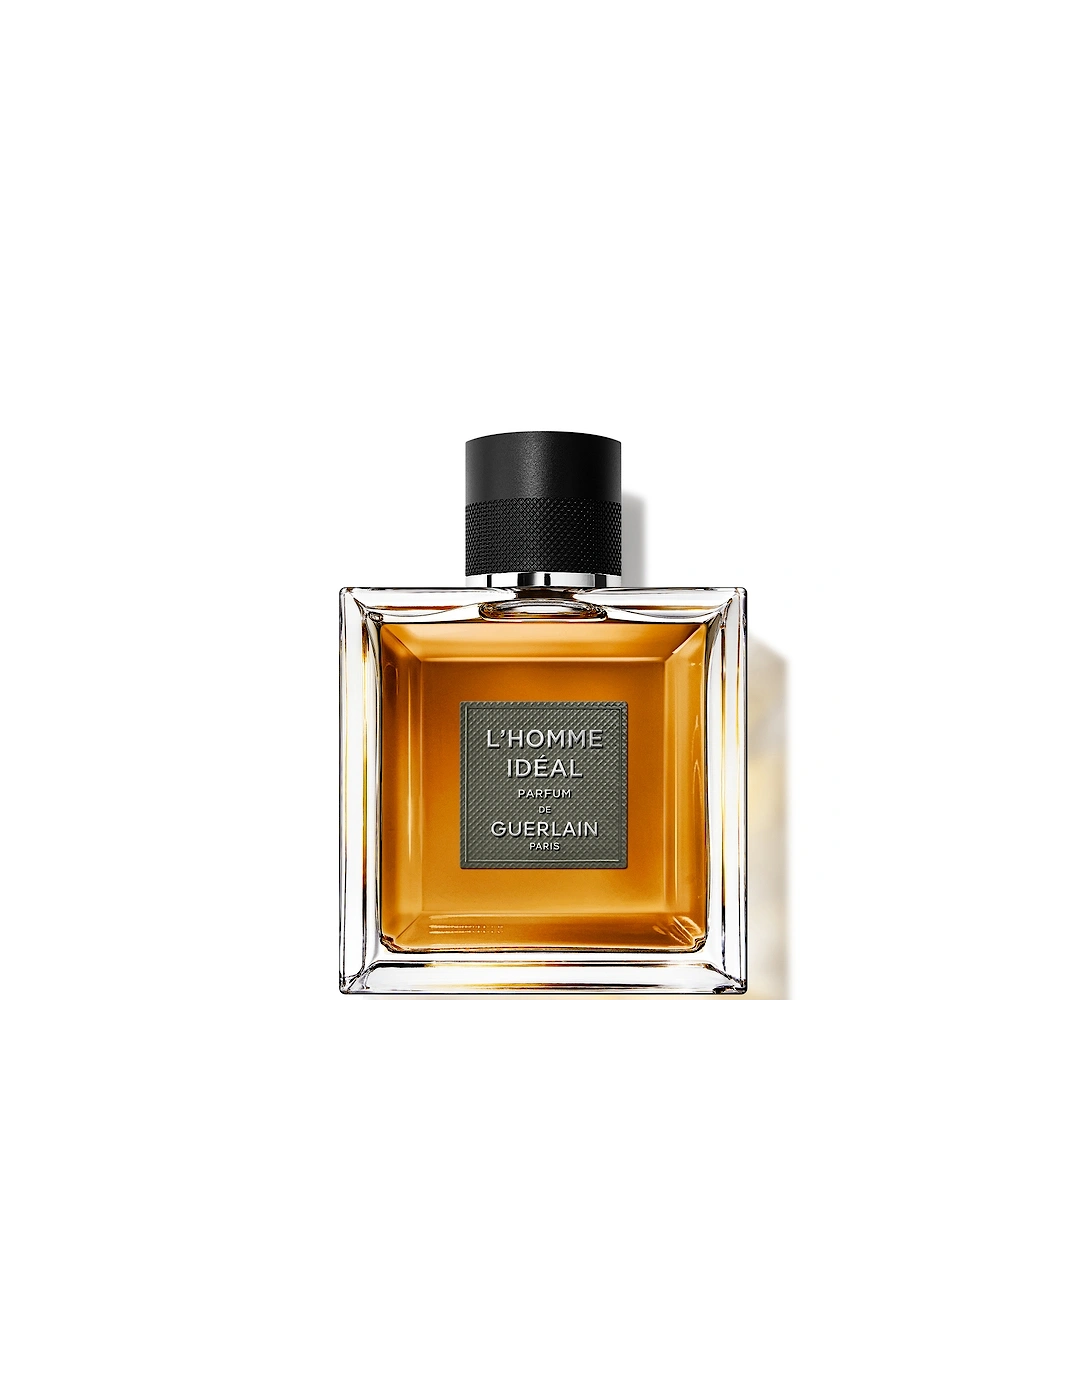 L'Homme Idéal Parfum 100ml, 2 of 1